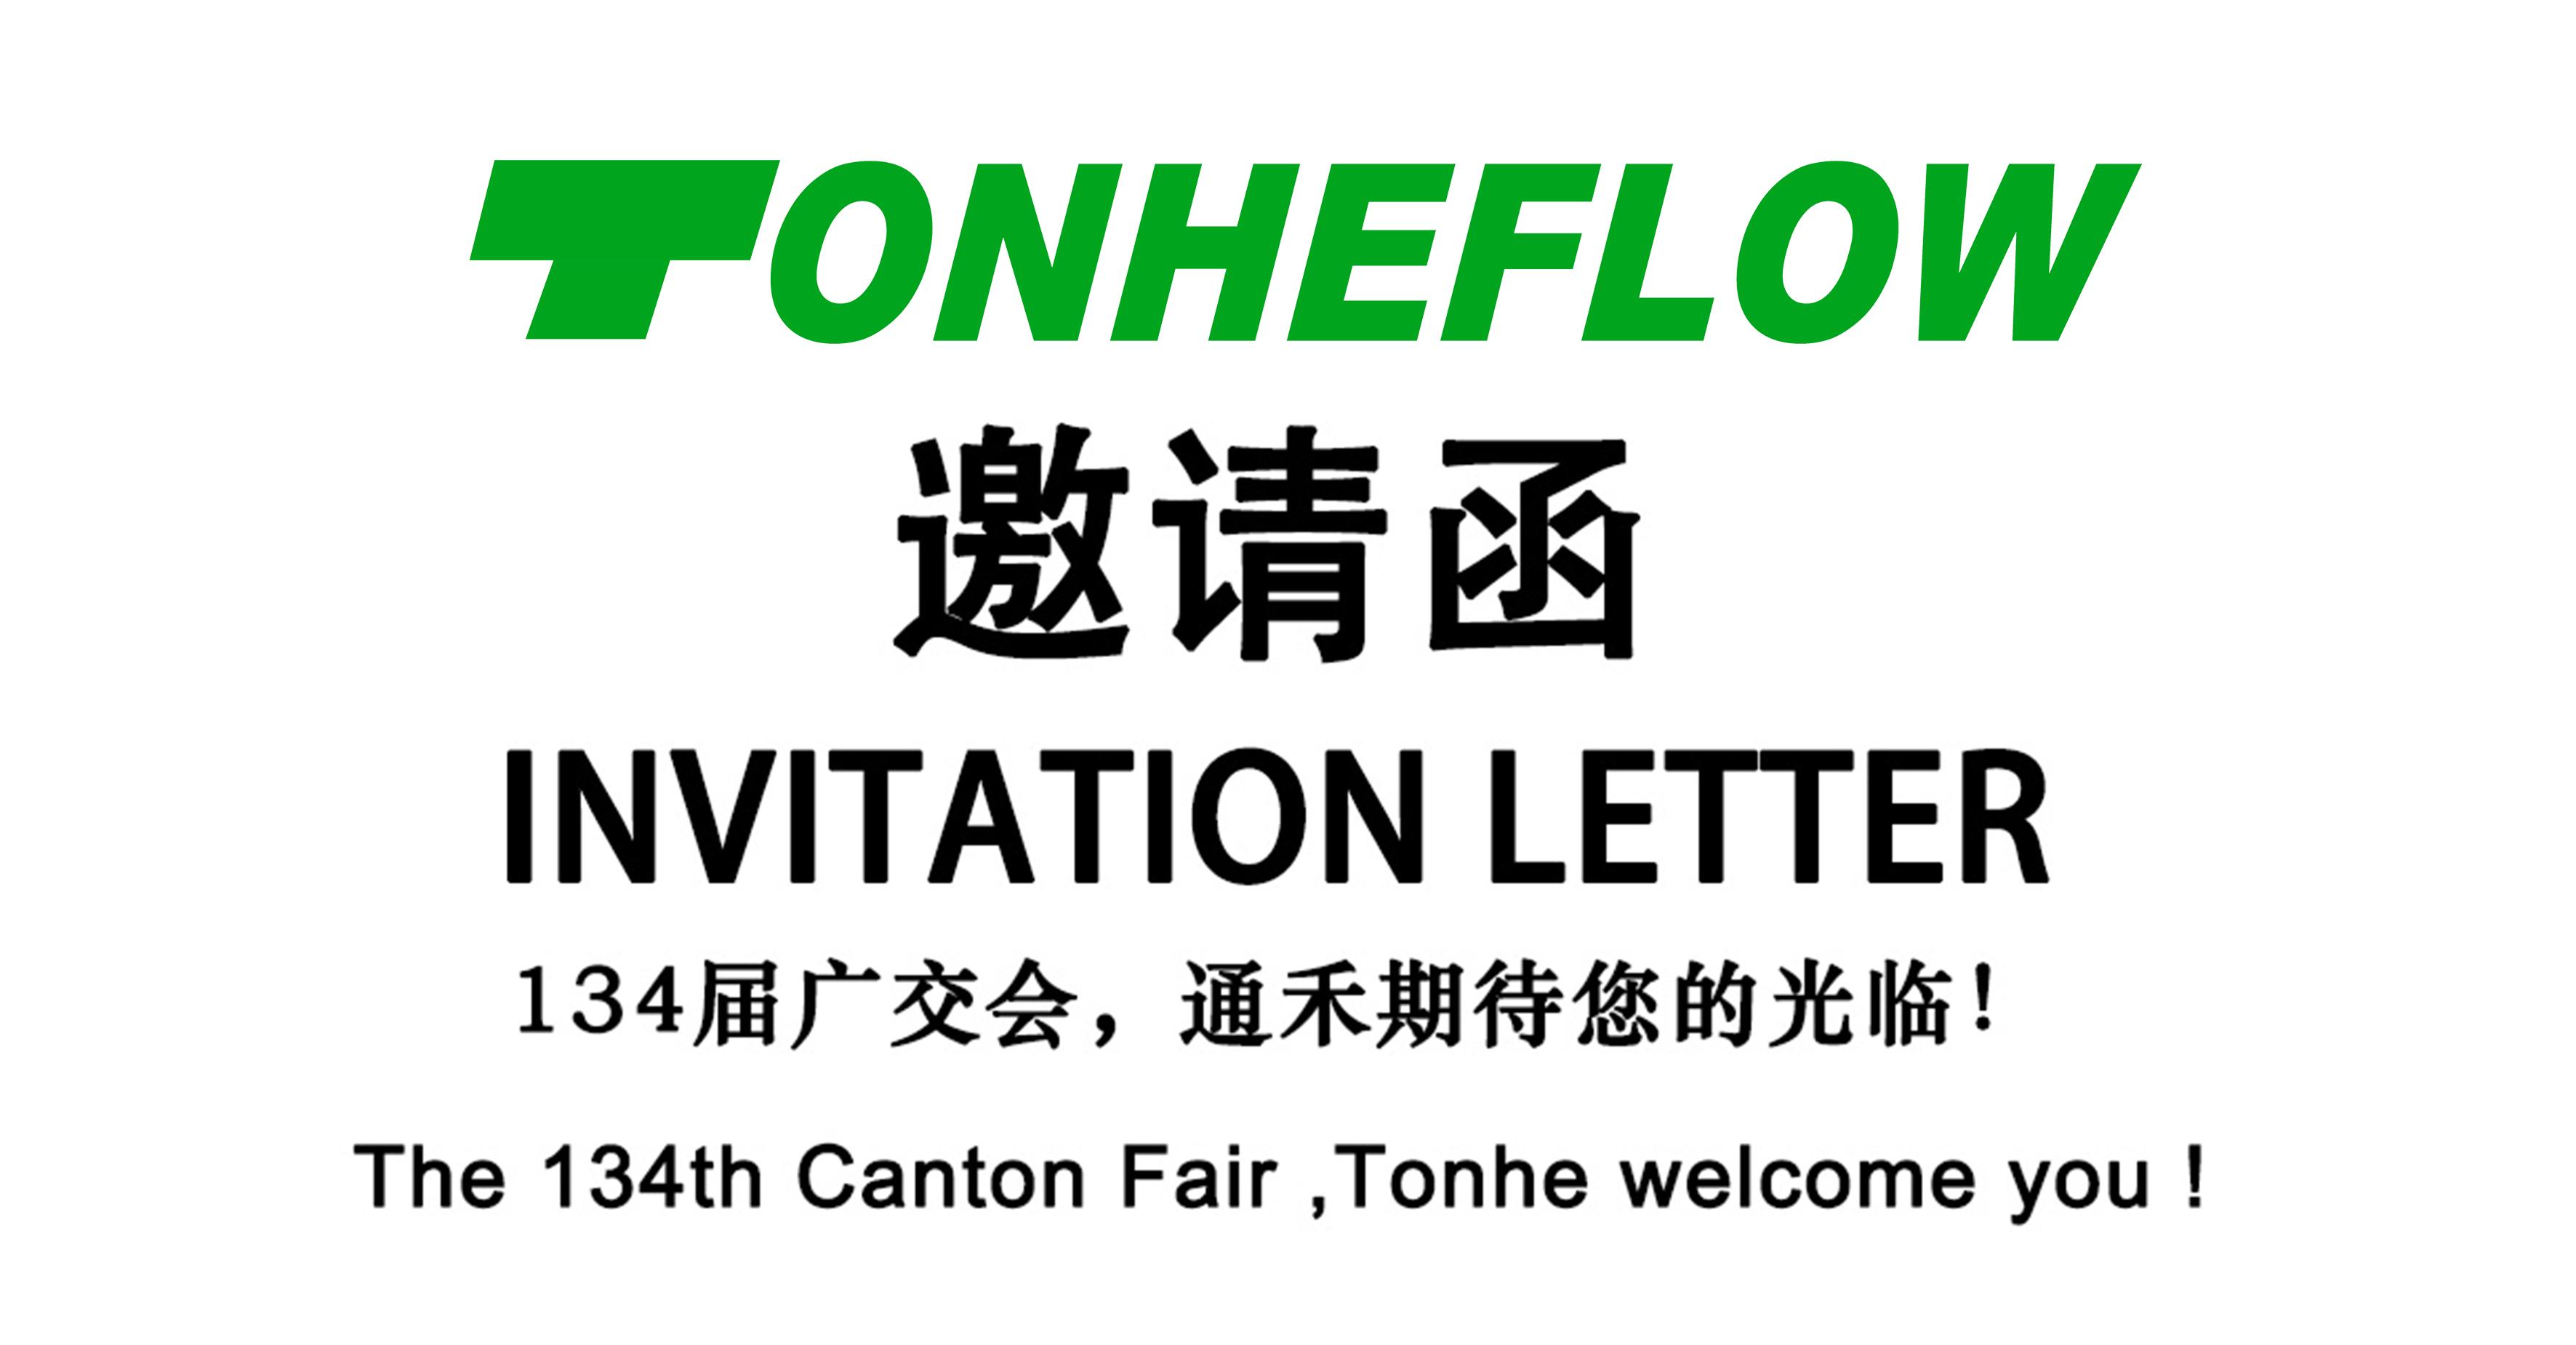 您有一份来自通禾广交会的邀请函，请注意查收！